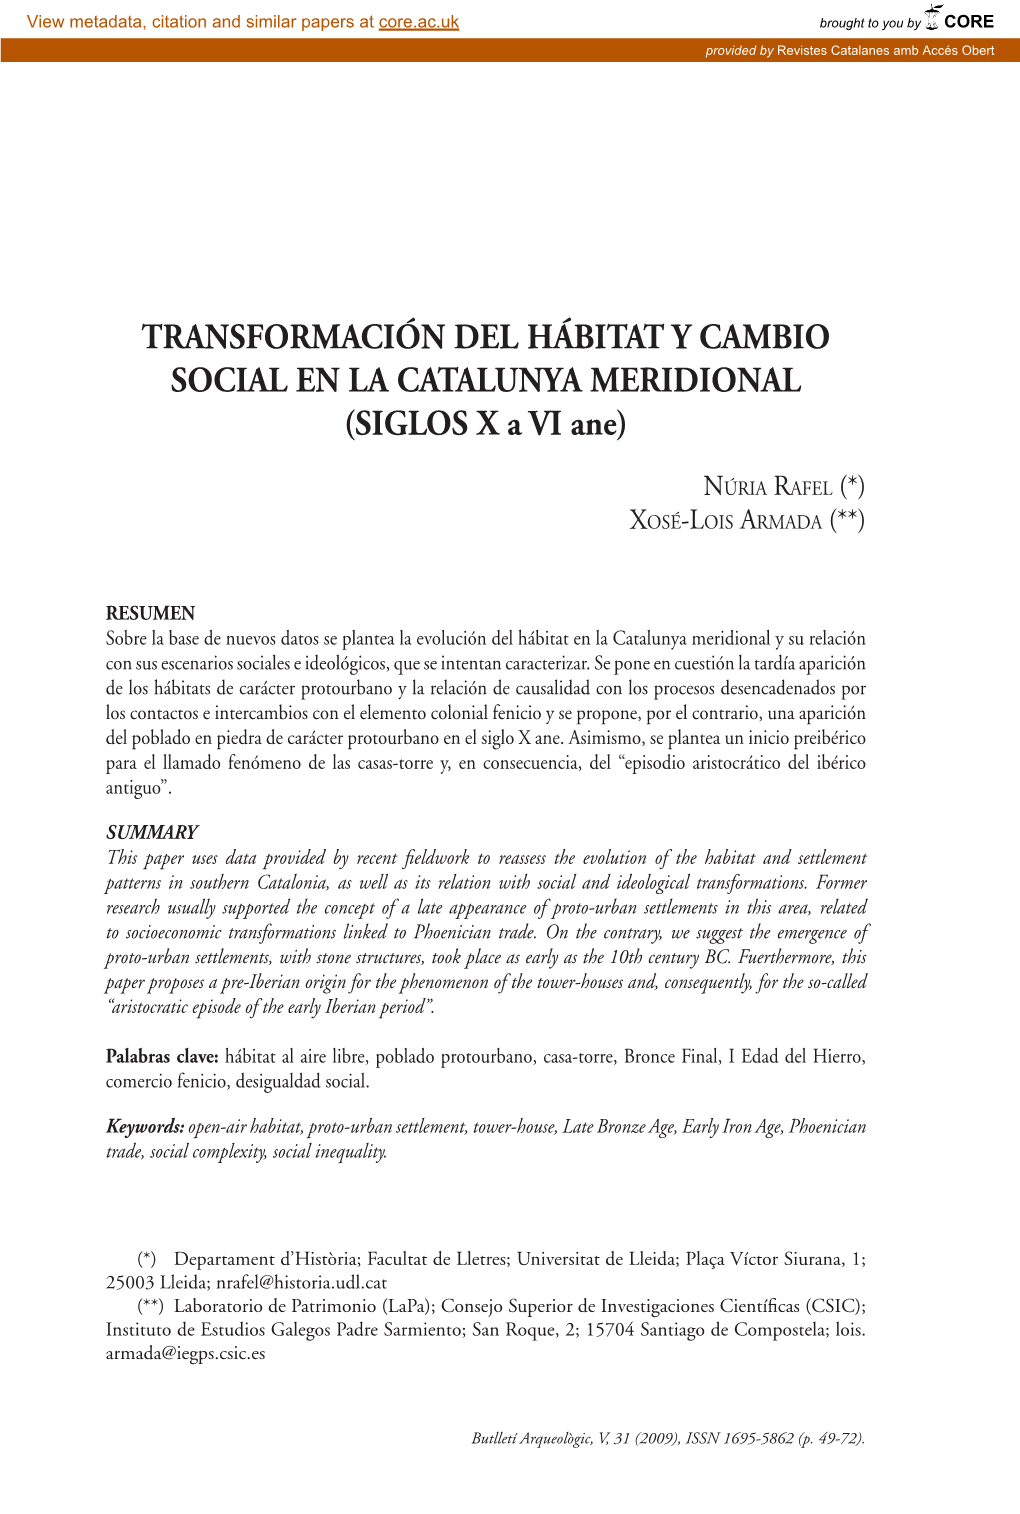 TRANSFORMACIÓN DEL HÁBITAT Y CAMBIO SOCIAL EN LA CATALUNYA MERIDIONAL (SIGLOS X a VI Ane)